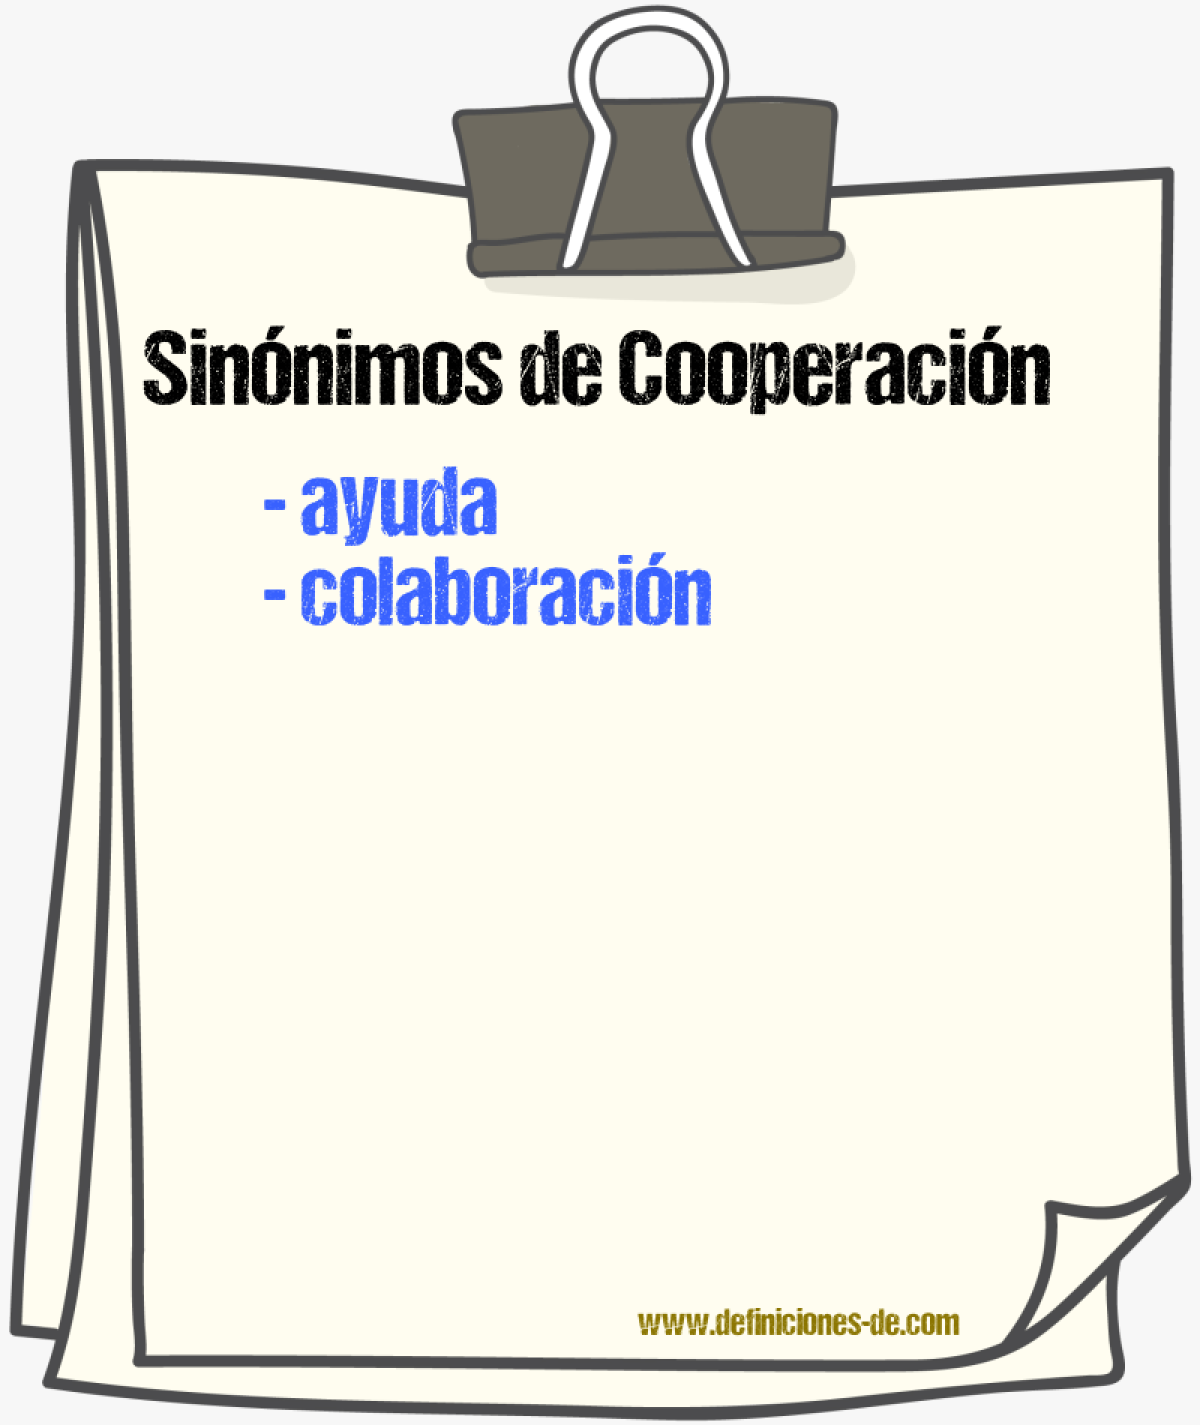 Sinónimos de cooperación